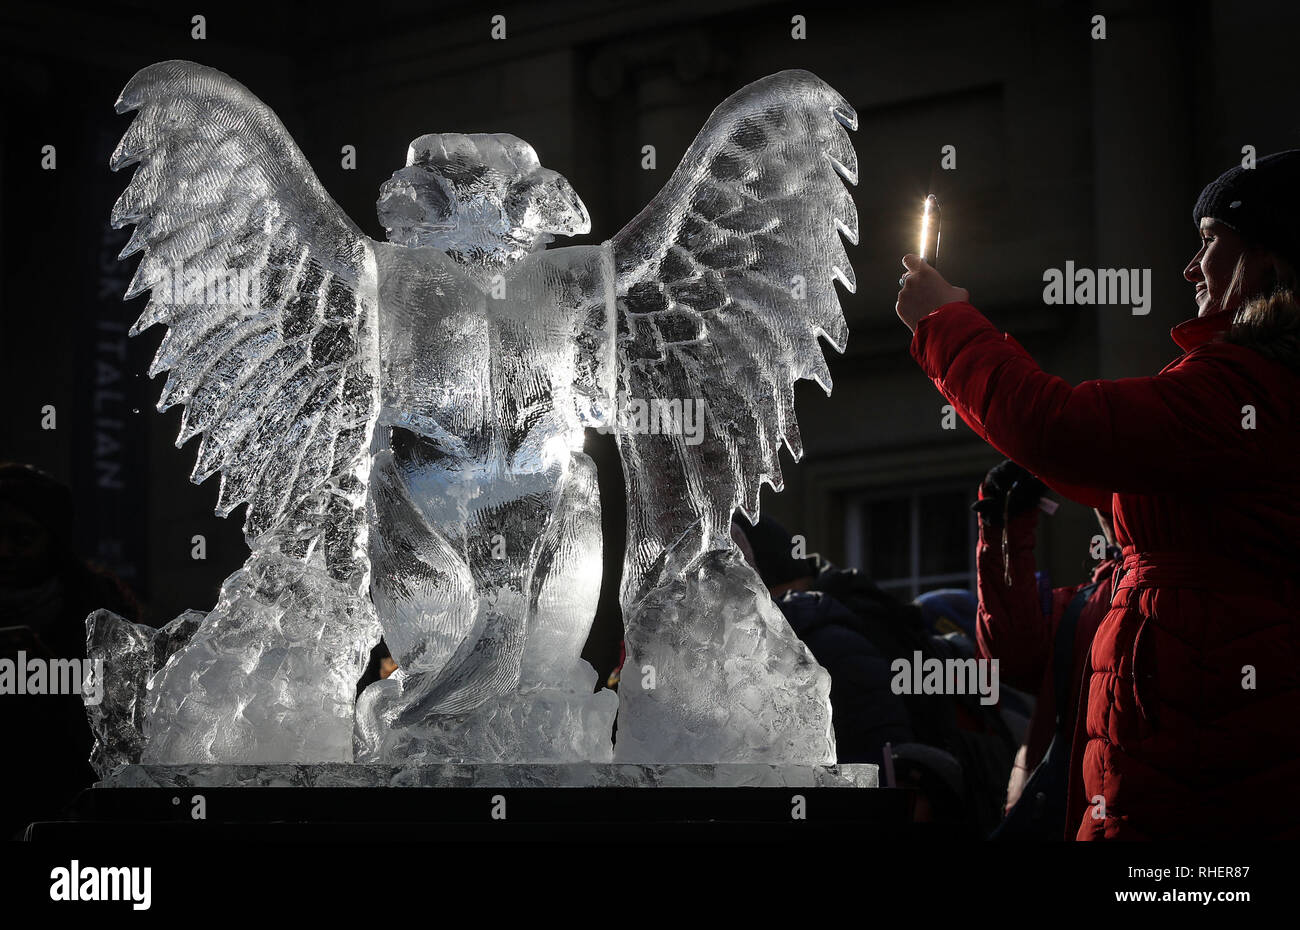 Une femme d'une des photographies de sculptures en glace un griffon, une partie du sentier de glace de New York, dans le Yorkshire, après une nuit de neige hier et devraient entraîner des troubles. Banque D'Images